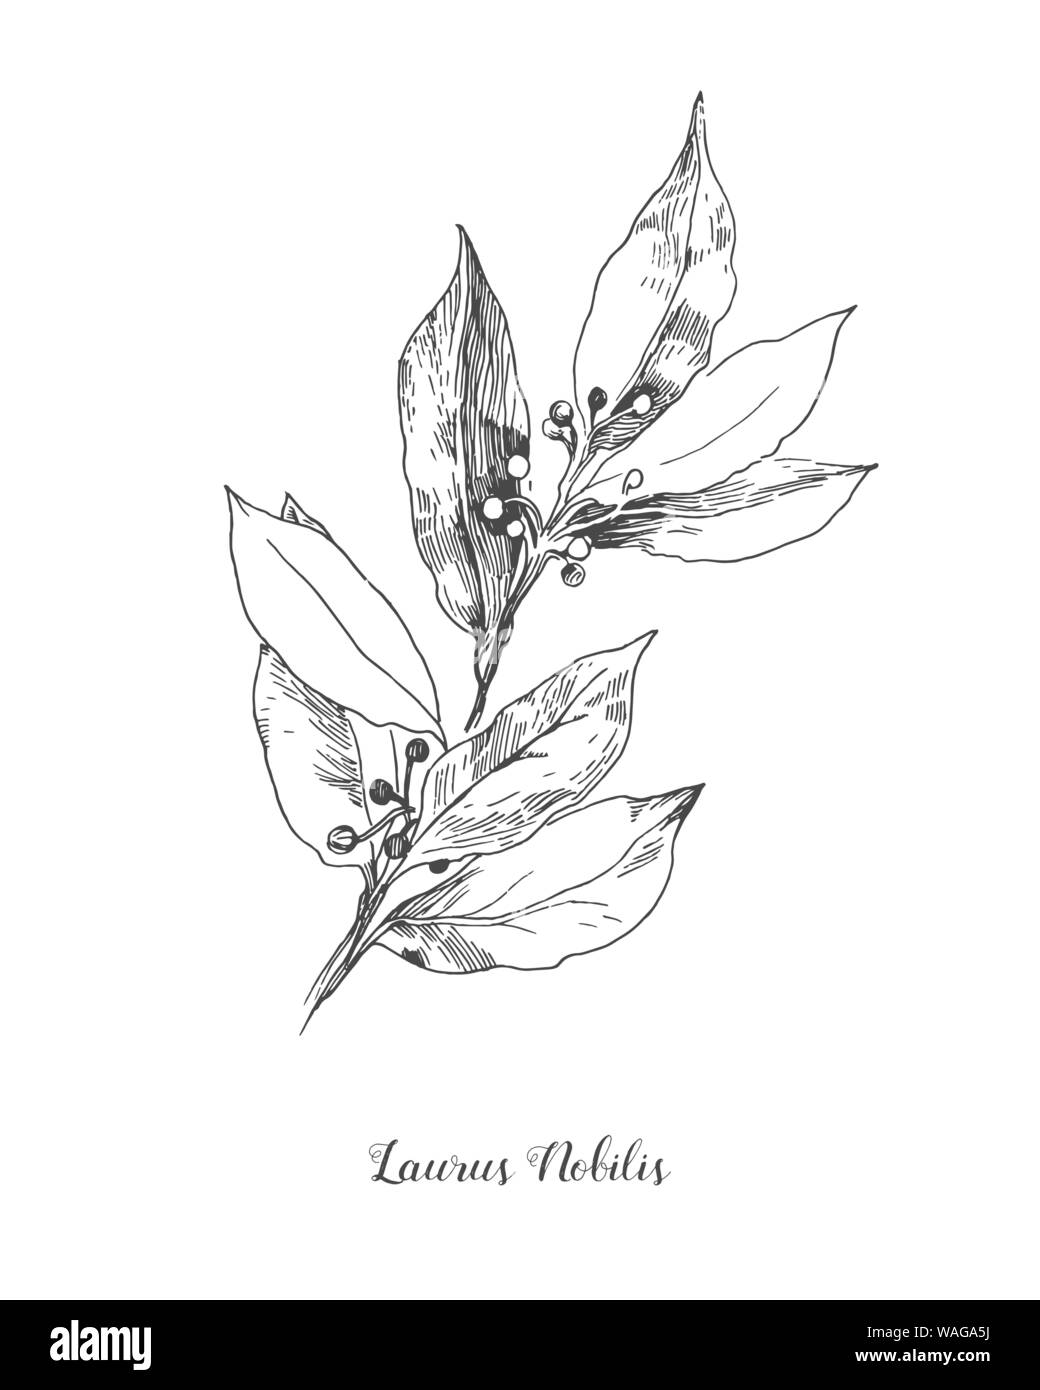 Vektor botanischen Abbildung der Blätter Laurus nobilis. Isolierte Abbildung Element. Schwarz und weiß eingraviert Tinte Art.Vektor Zweig für Stock Vektor